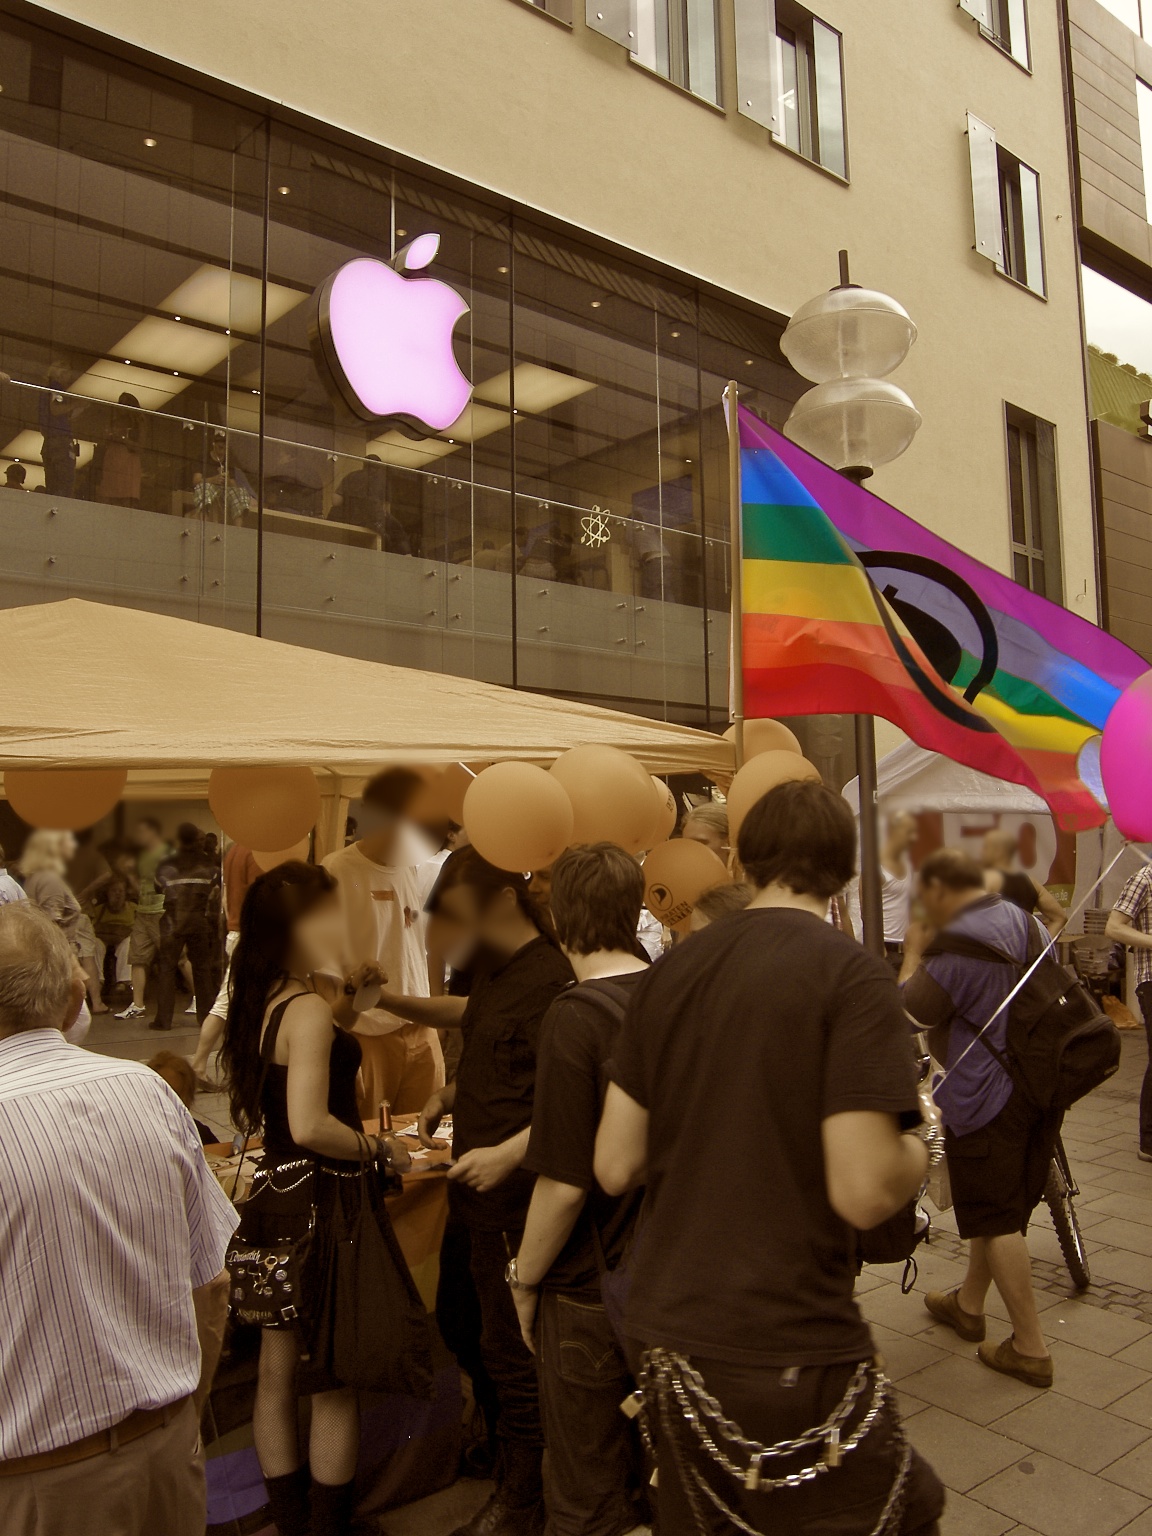 Piratenpartei vor Apple Store - das &auml;ndern nichts, wieder einmal...